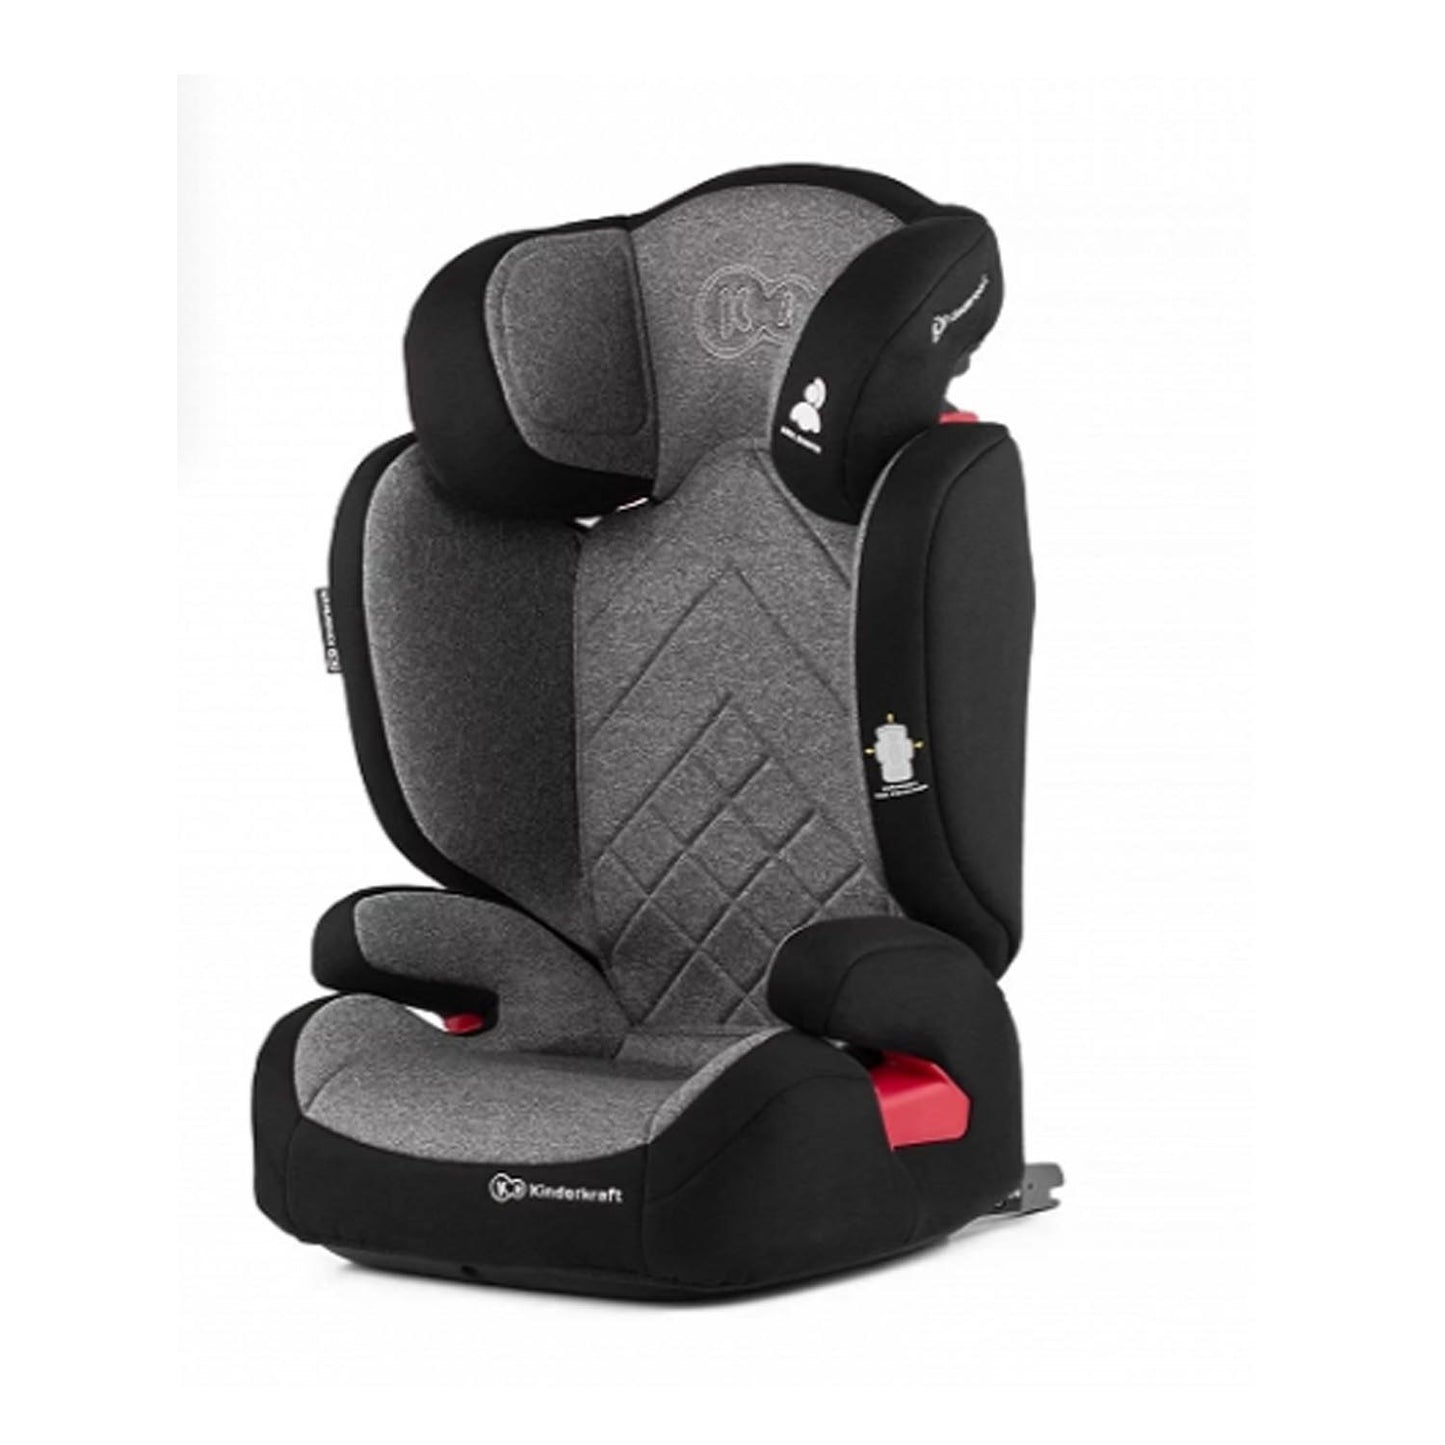 Kinderkraft Xpander Car Seat - Gray